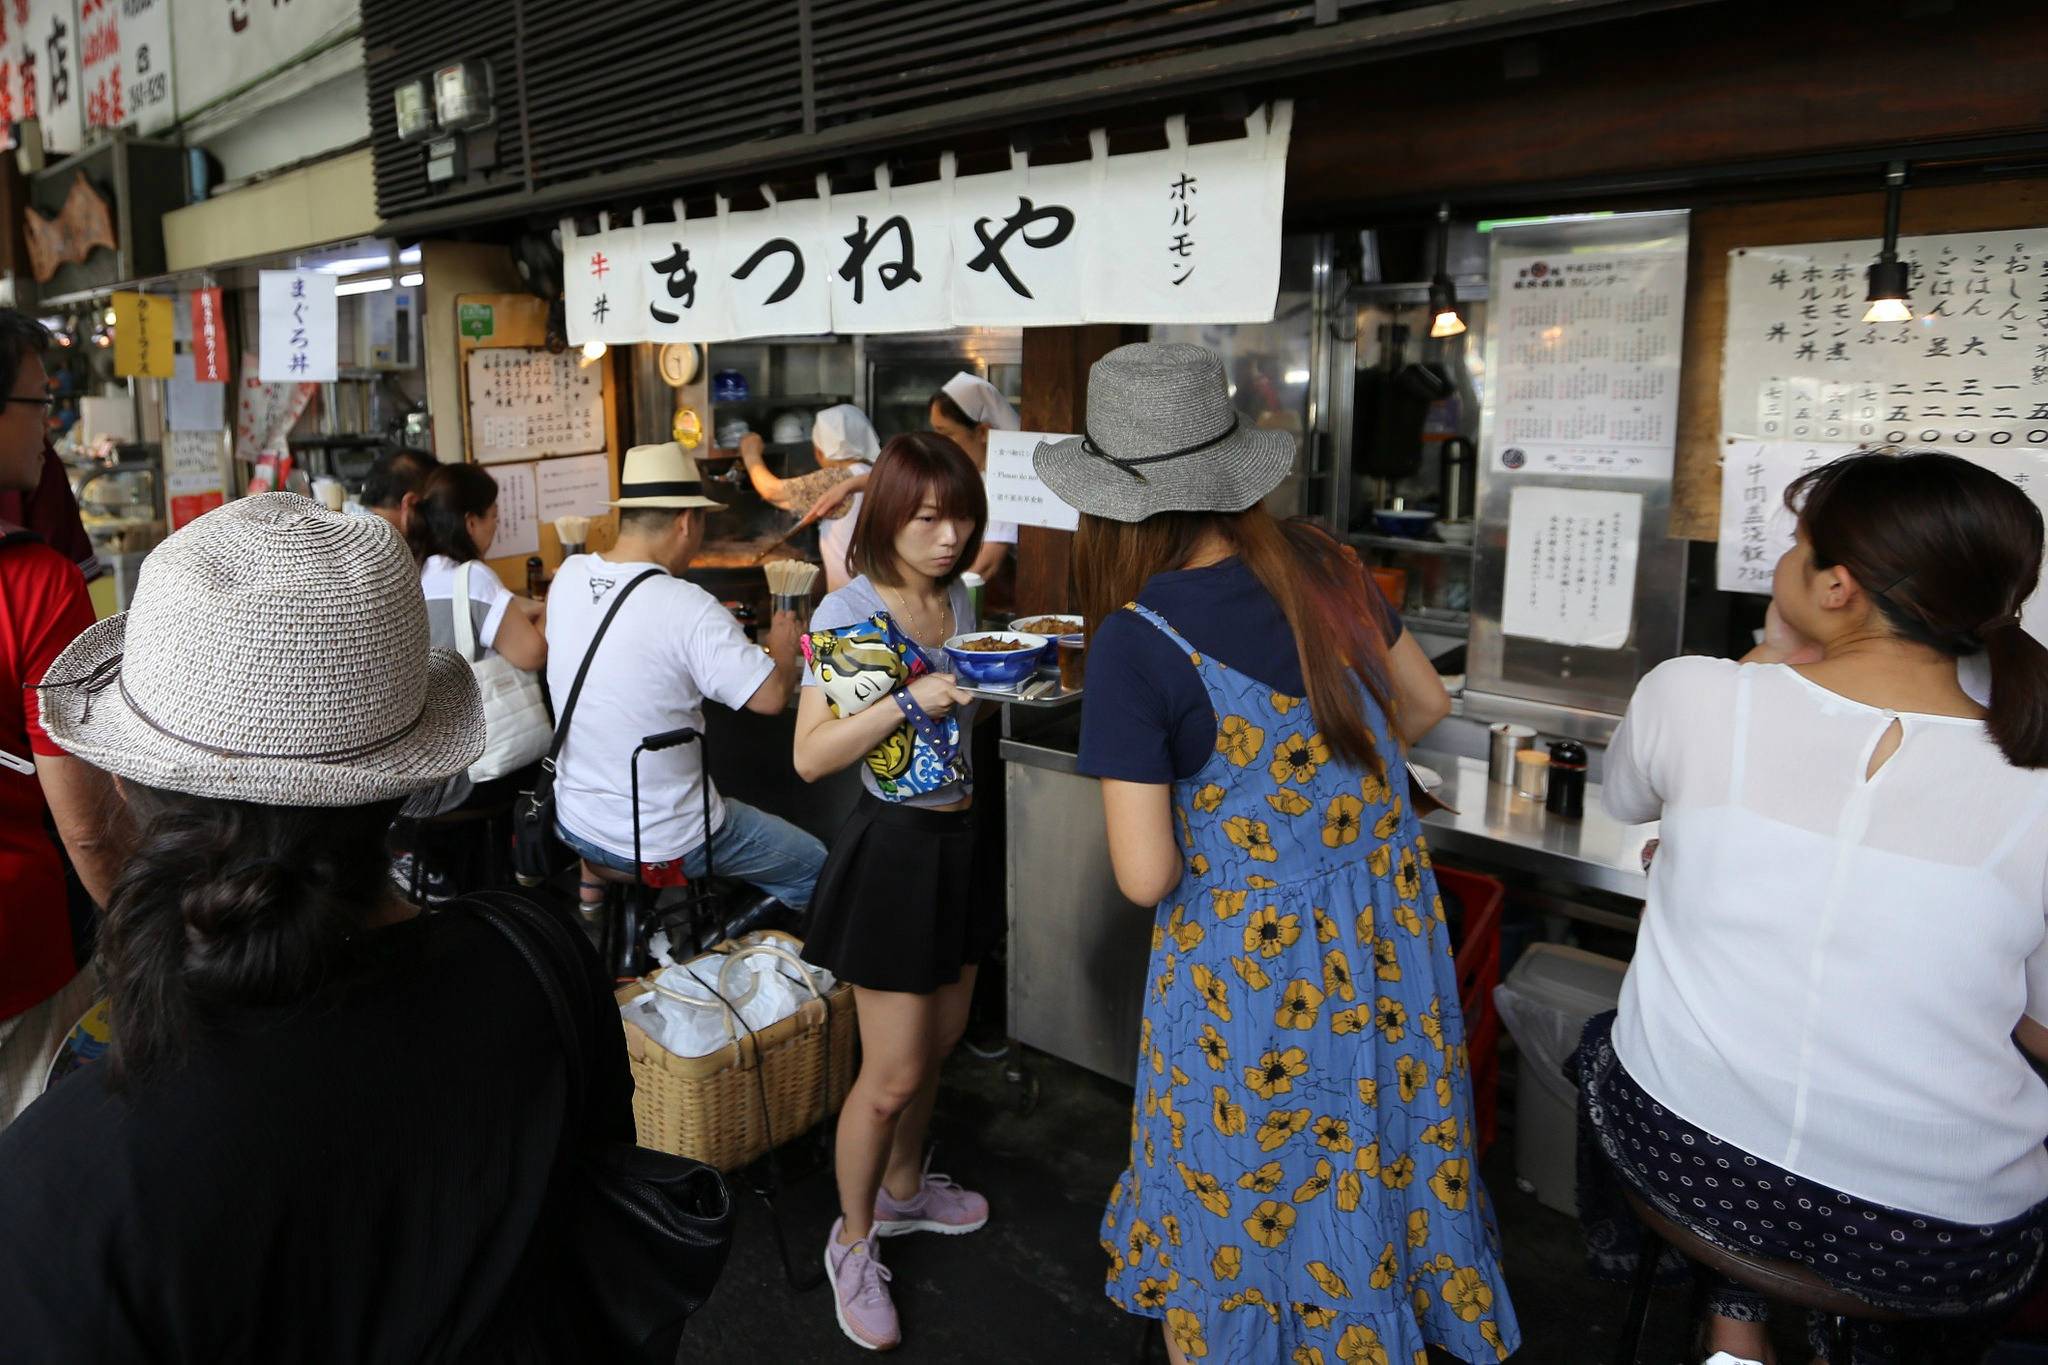 Tableall helps tourists find top Tokyo restaurants